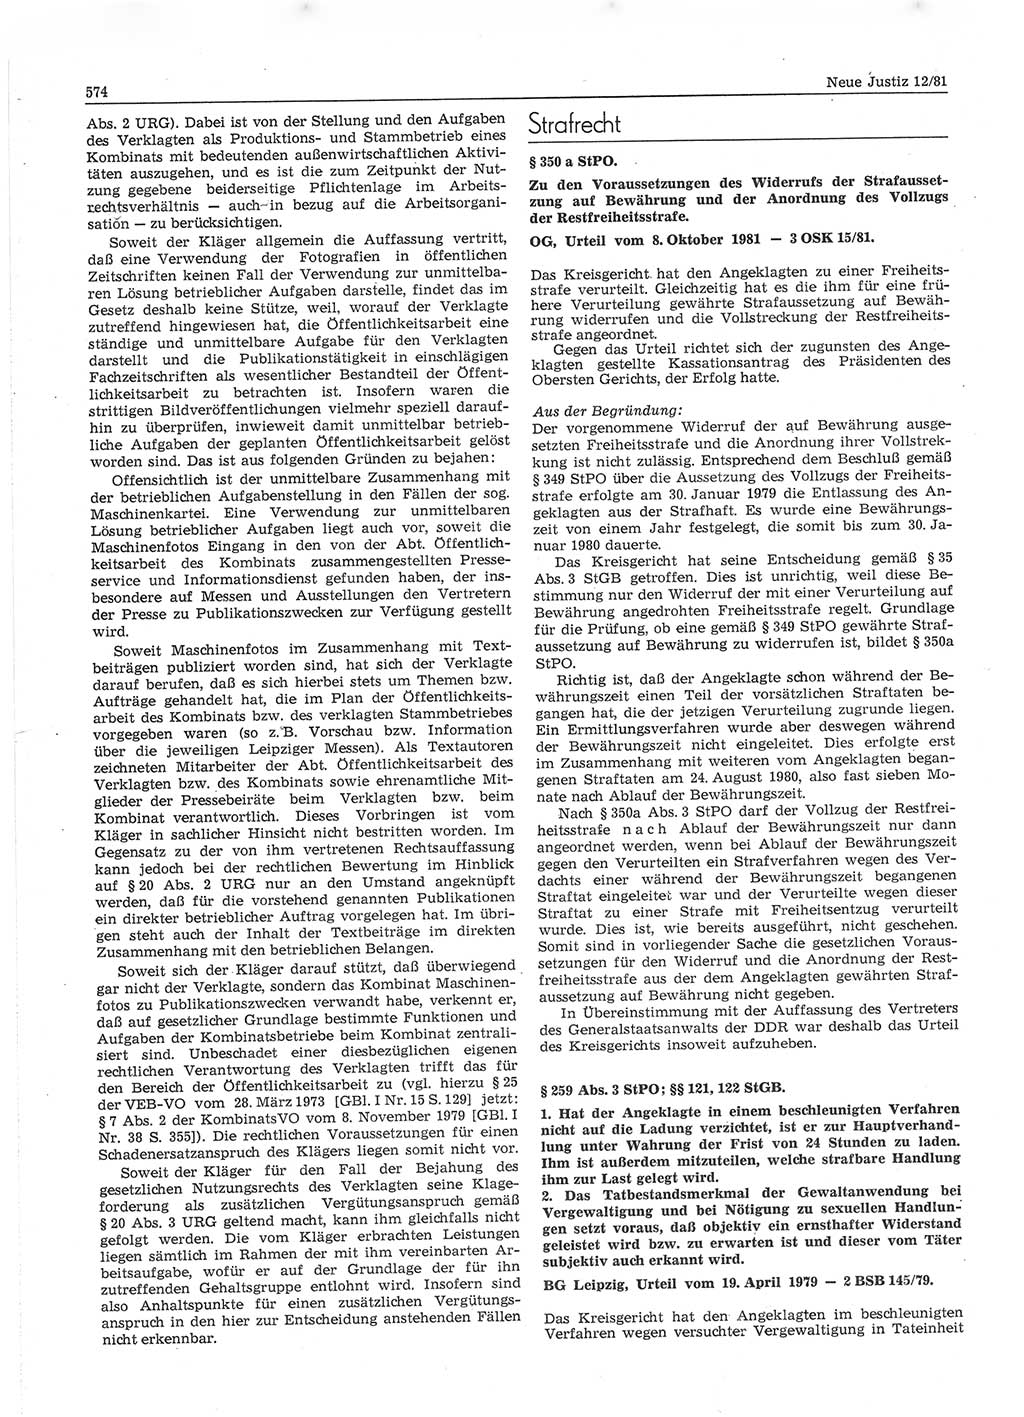 Neue Justiz (NJ), Zeitschrift für sozialistisches Recht und Gesetzlichkeit [Deutsche Demokratische Republik (DDR)], 35. Jahrgang 1981, Seite 574 (NJ DDR 1981, S. 574)